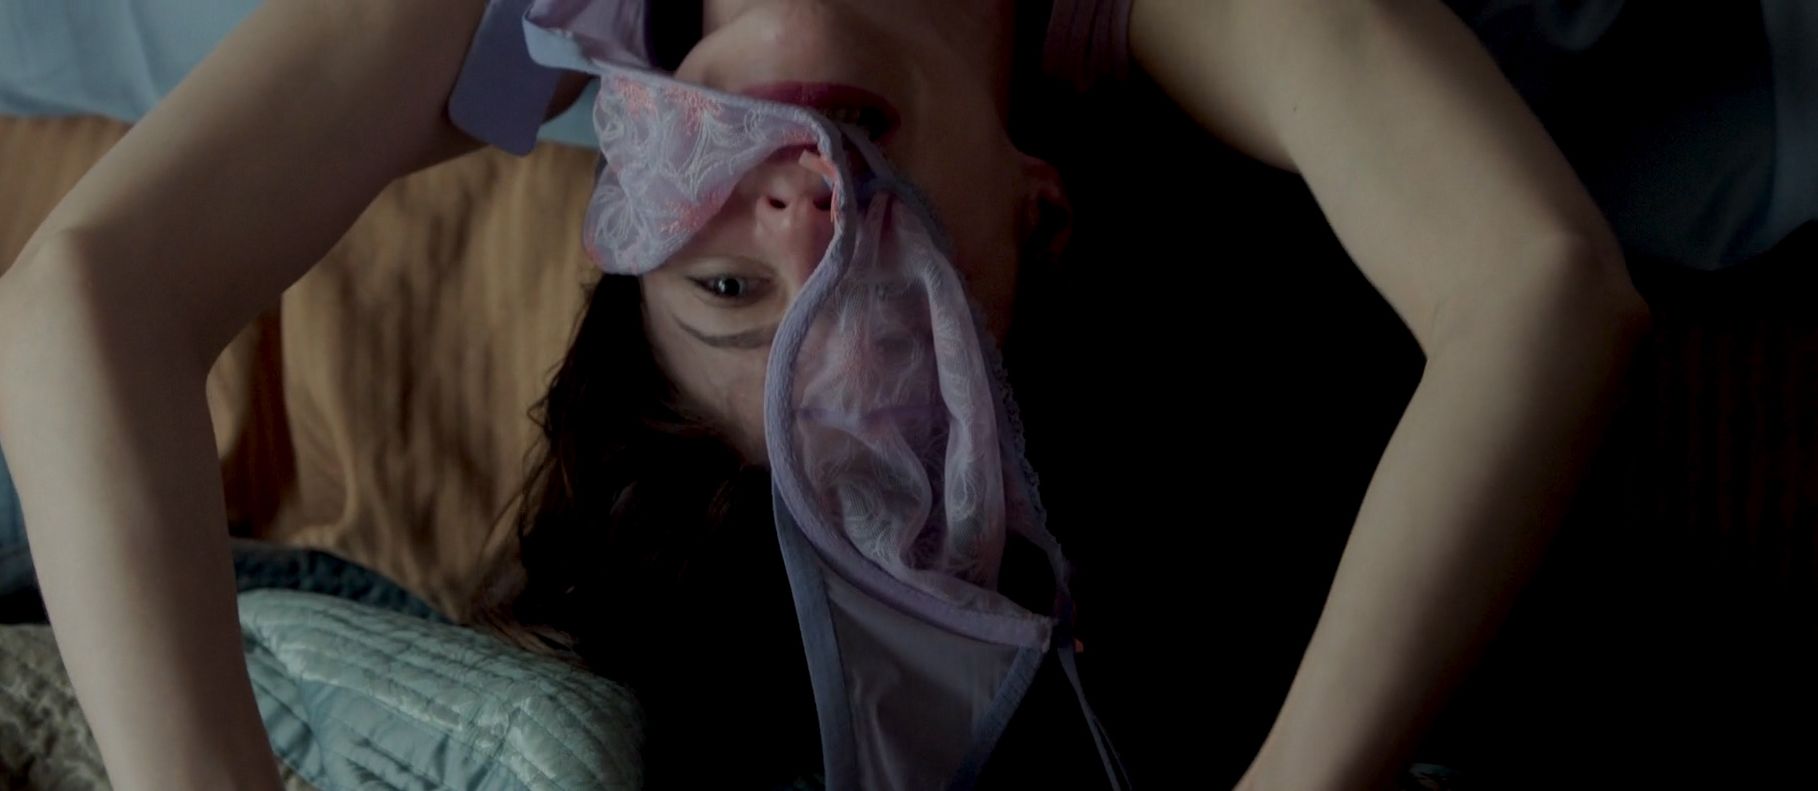 Alexandra Daddario, Kate Upton - The Layover 1080p (16).jpg